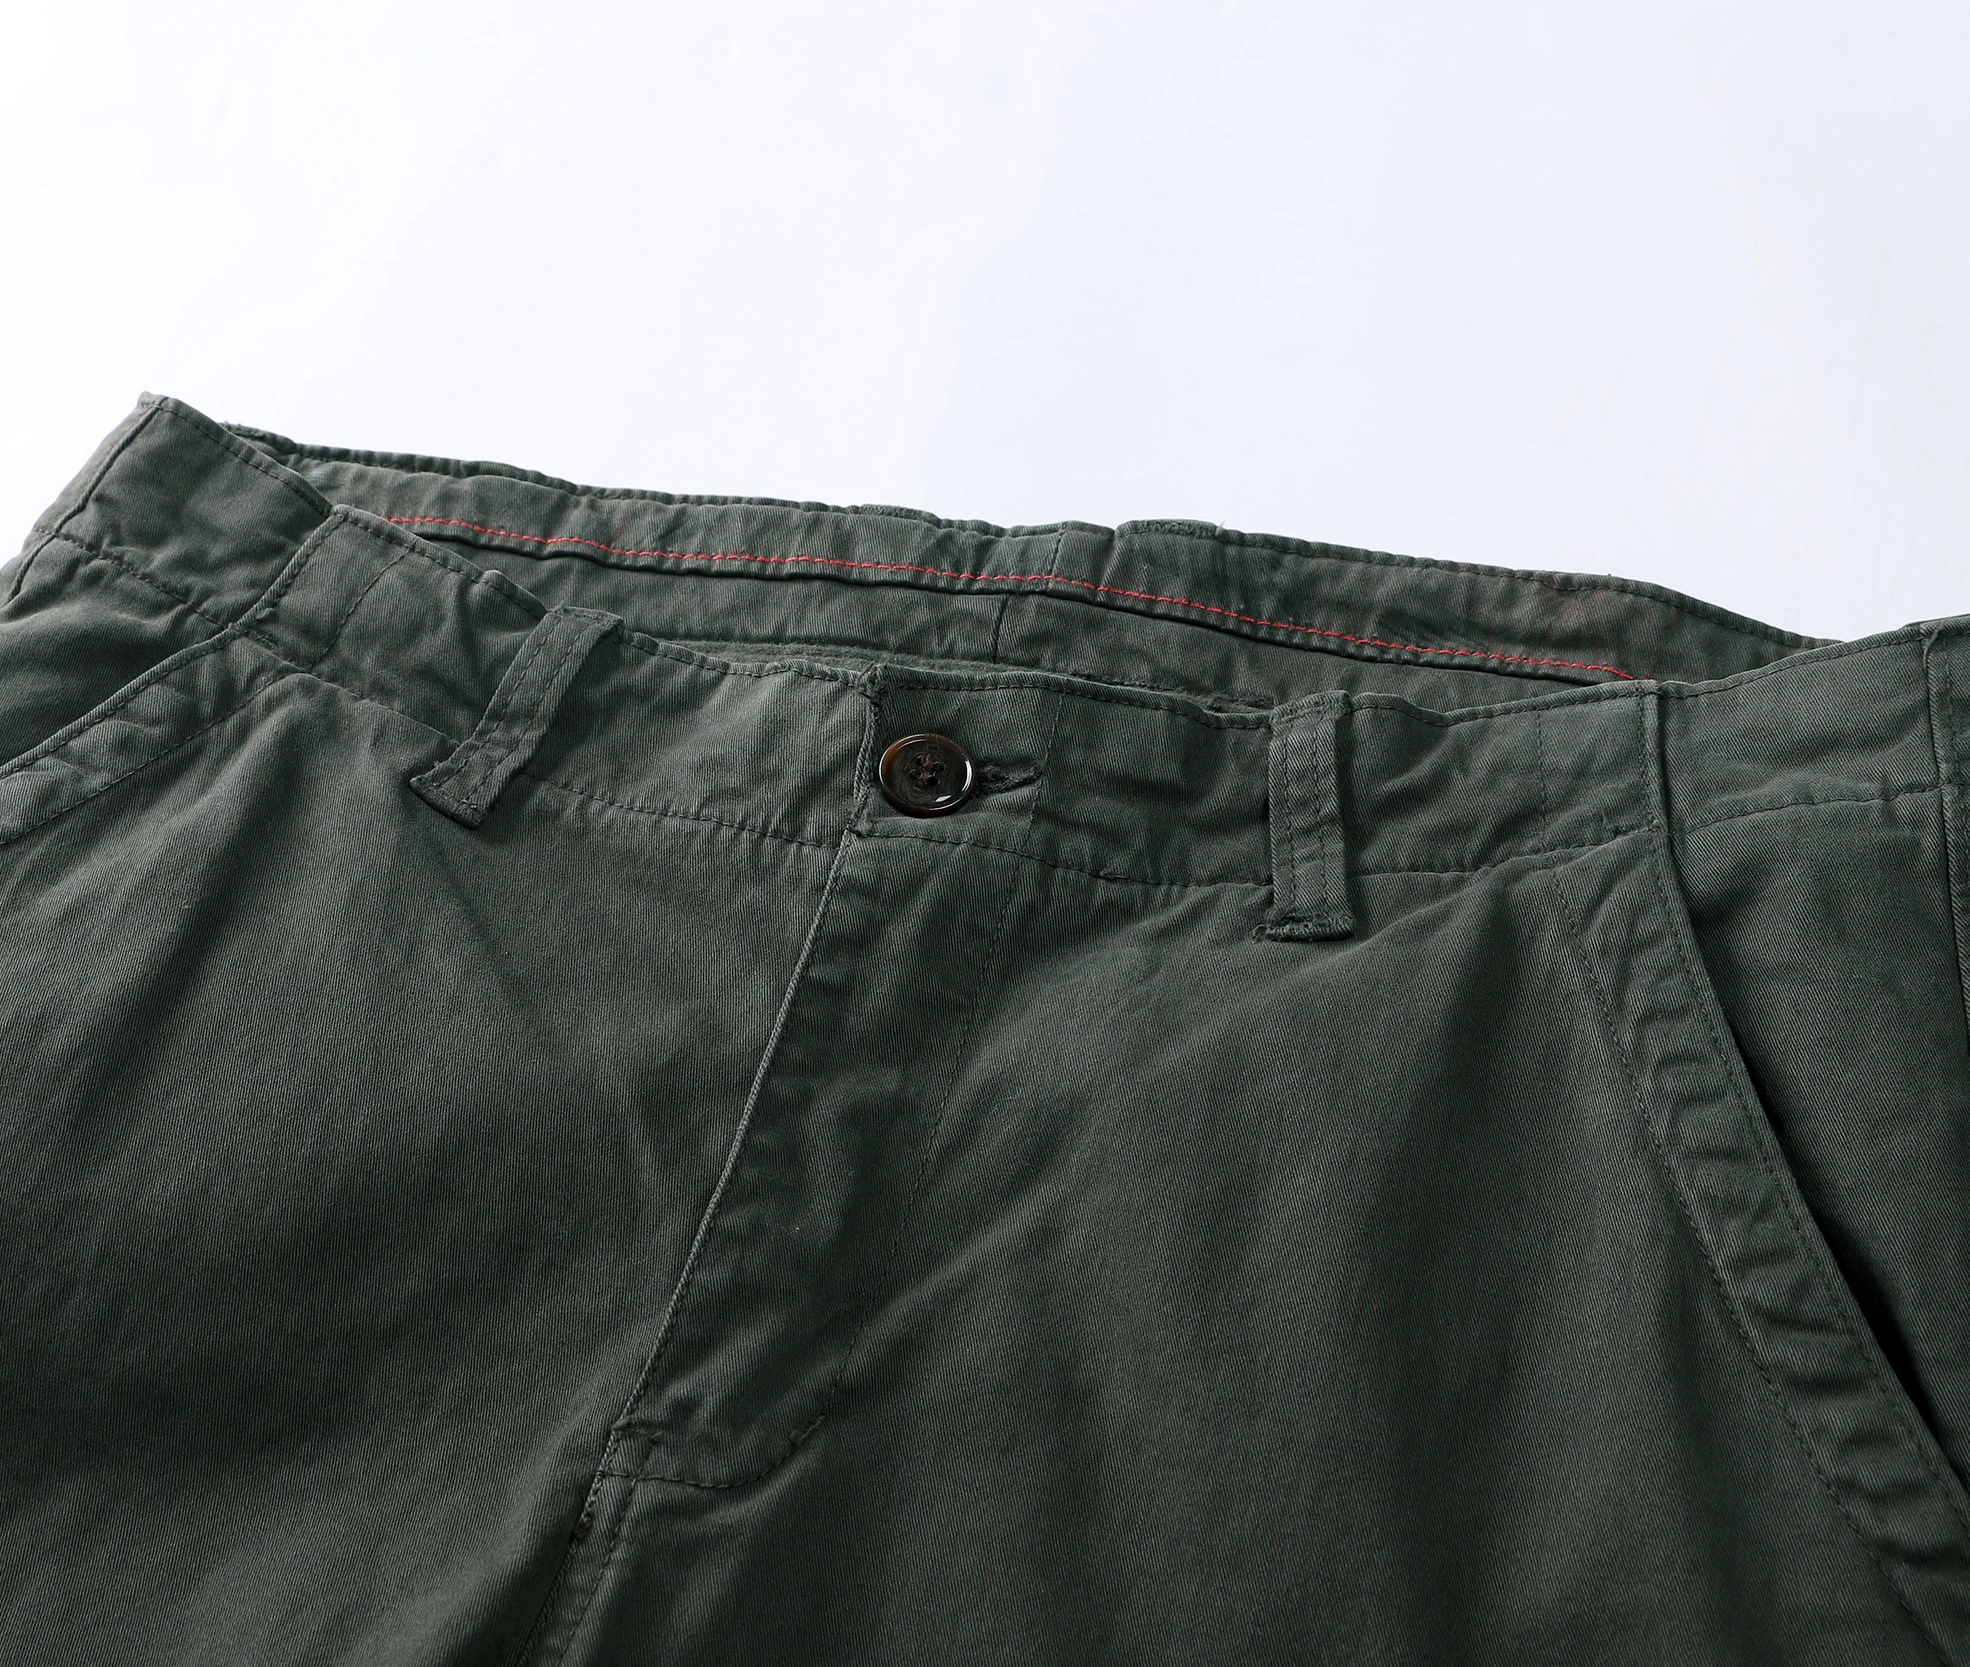 Mænd ' s Cargo Pants Herre Casual Multi Lommer Militære Stor Størrelse Taktiske Bukser Mænd Outwear Hær Niende Bukser